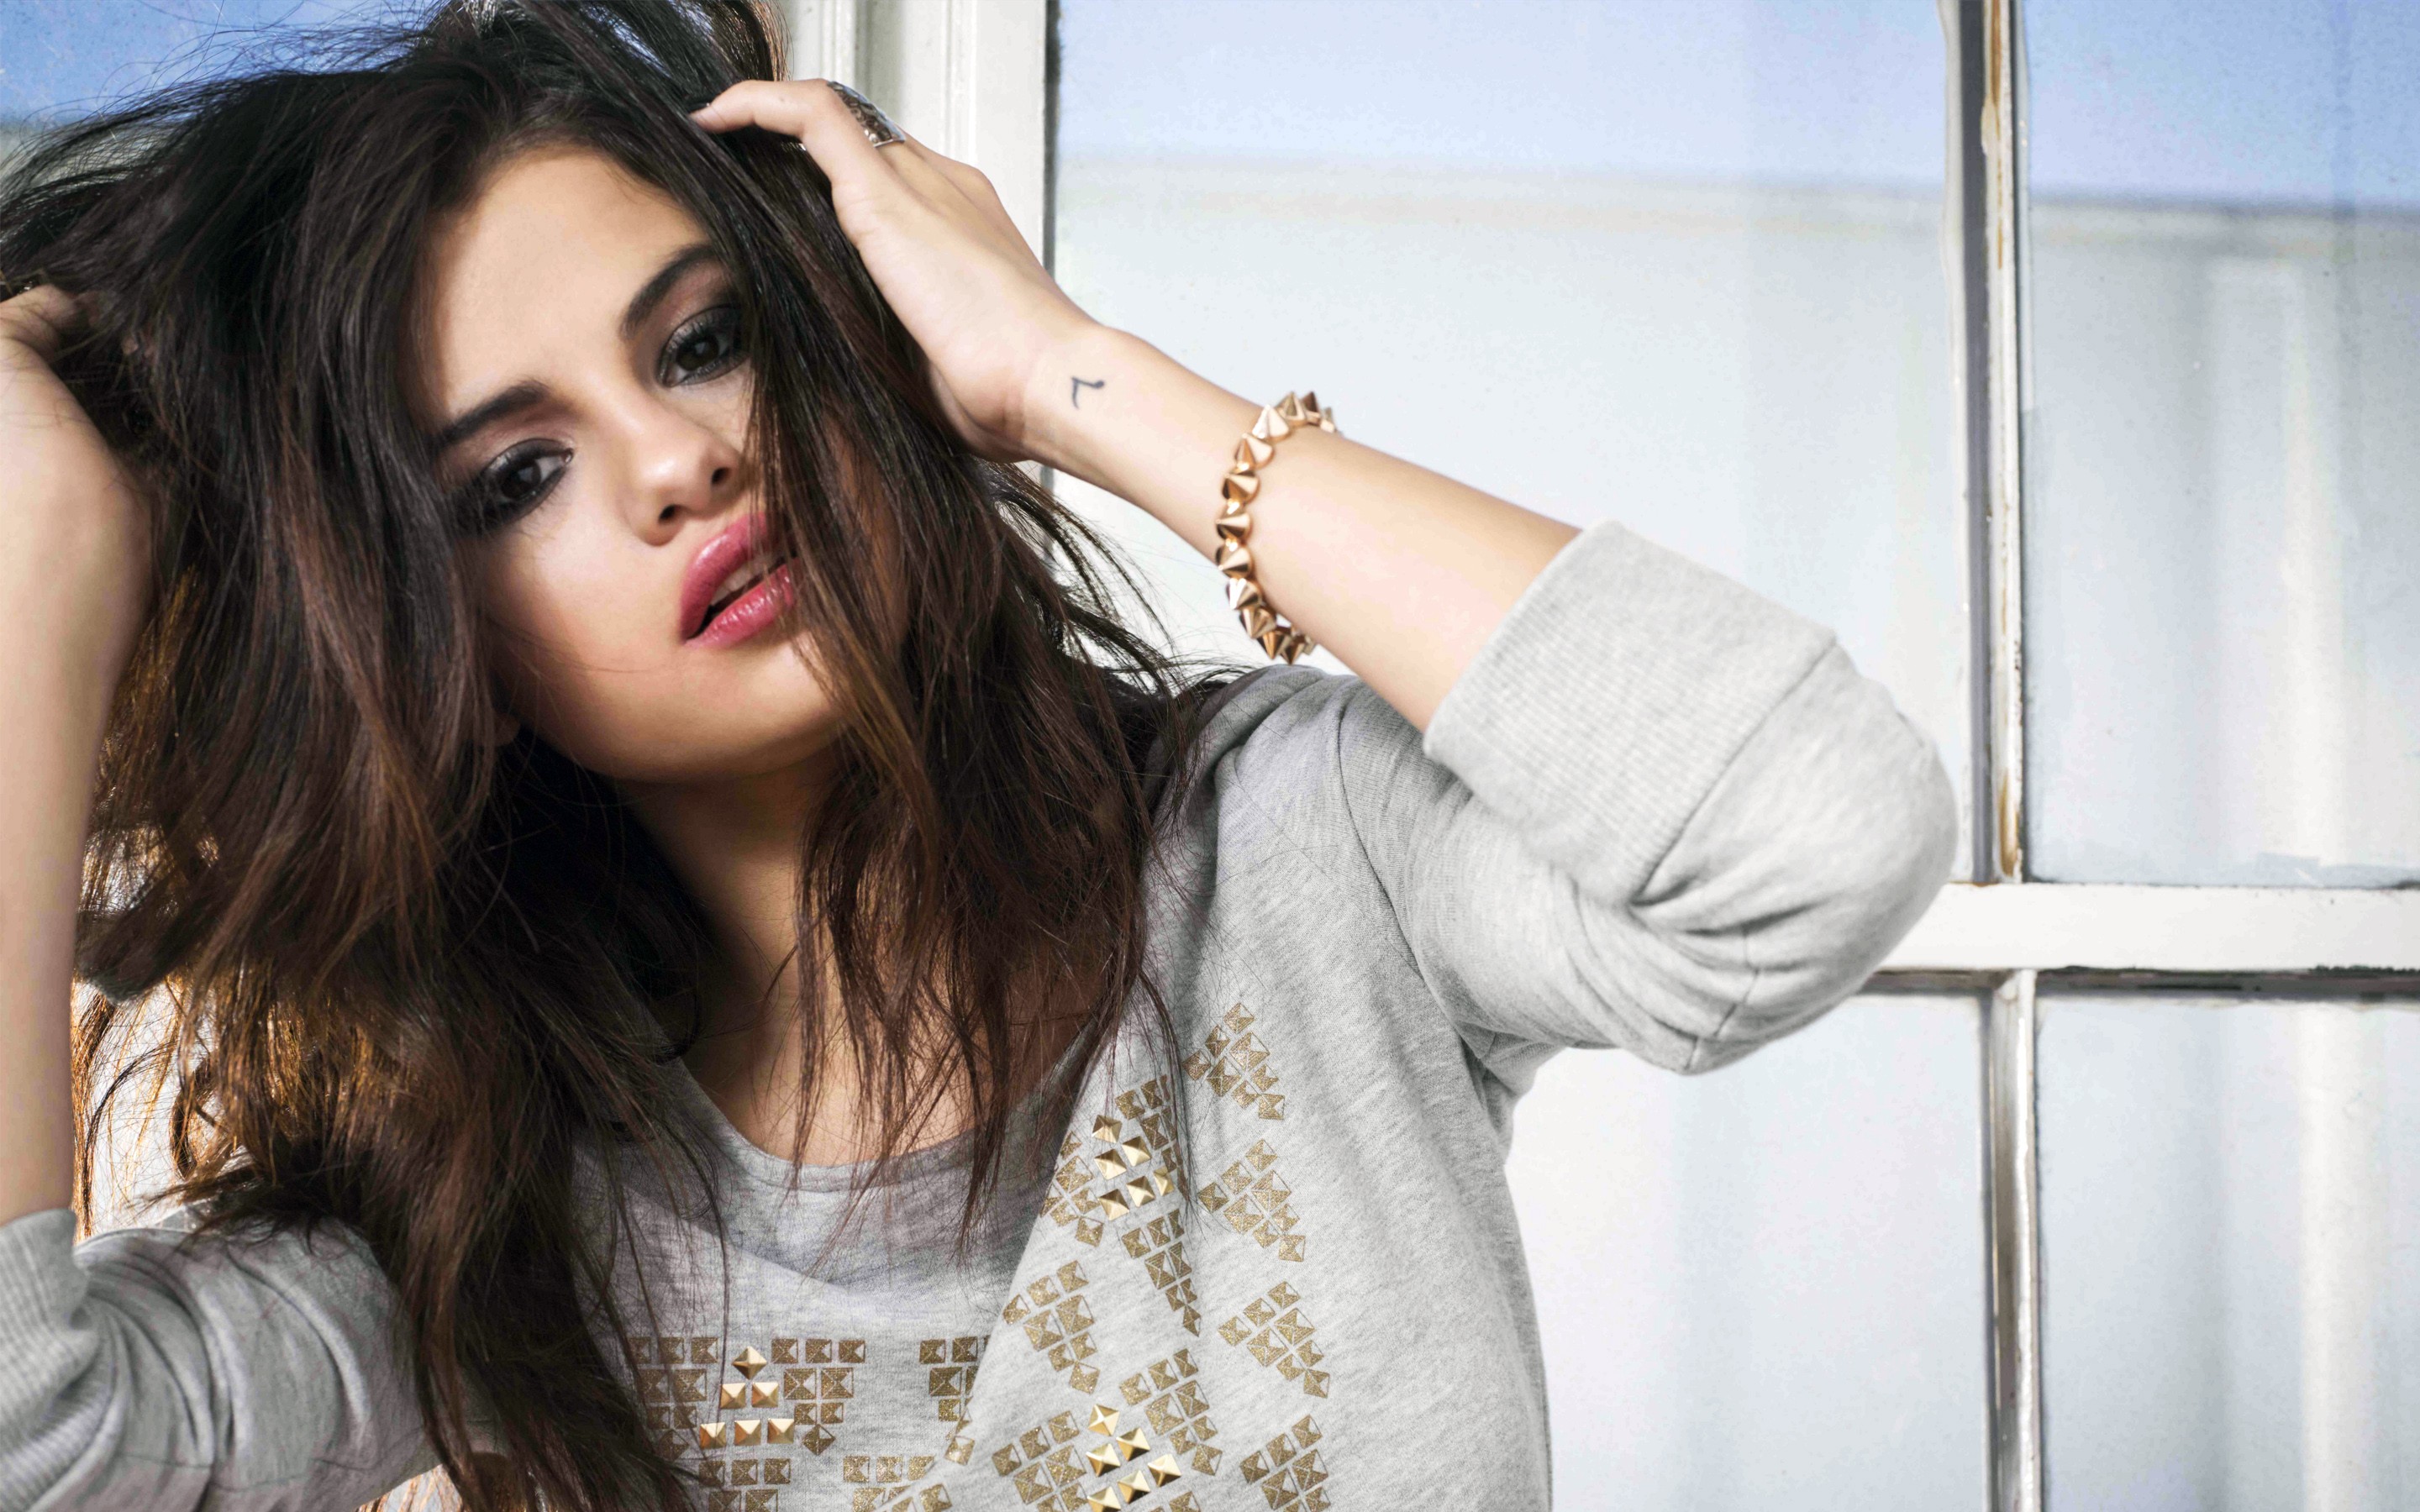 Wallpapers Selena Gomez hands in hair celebrities on the desktop